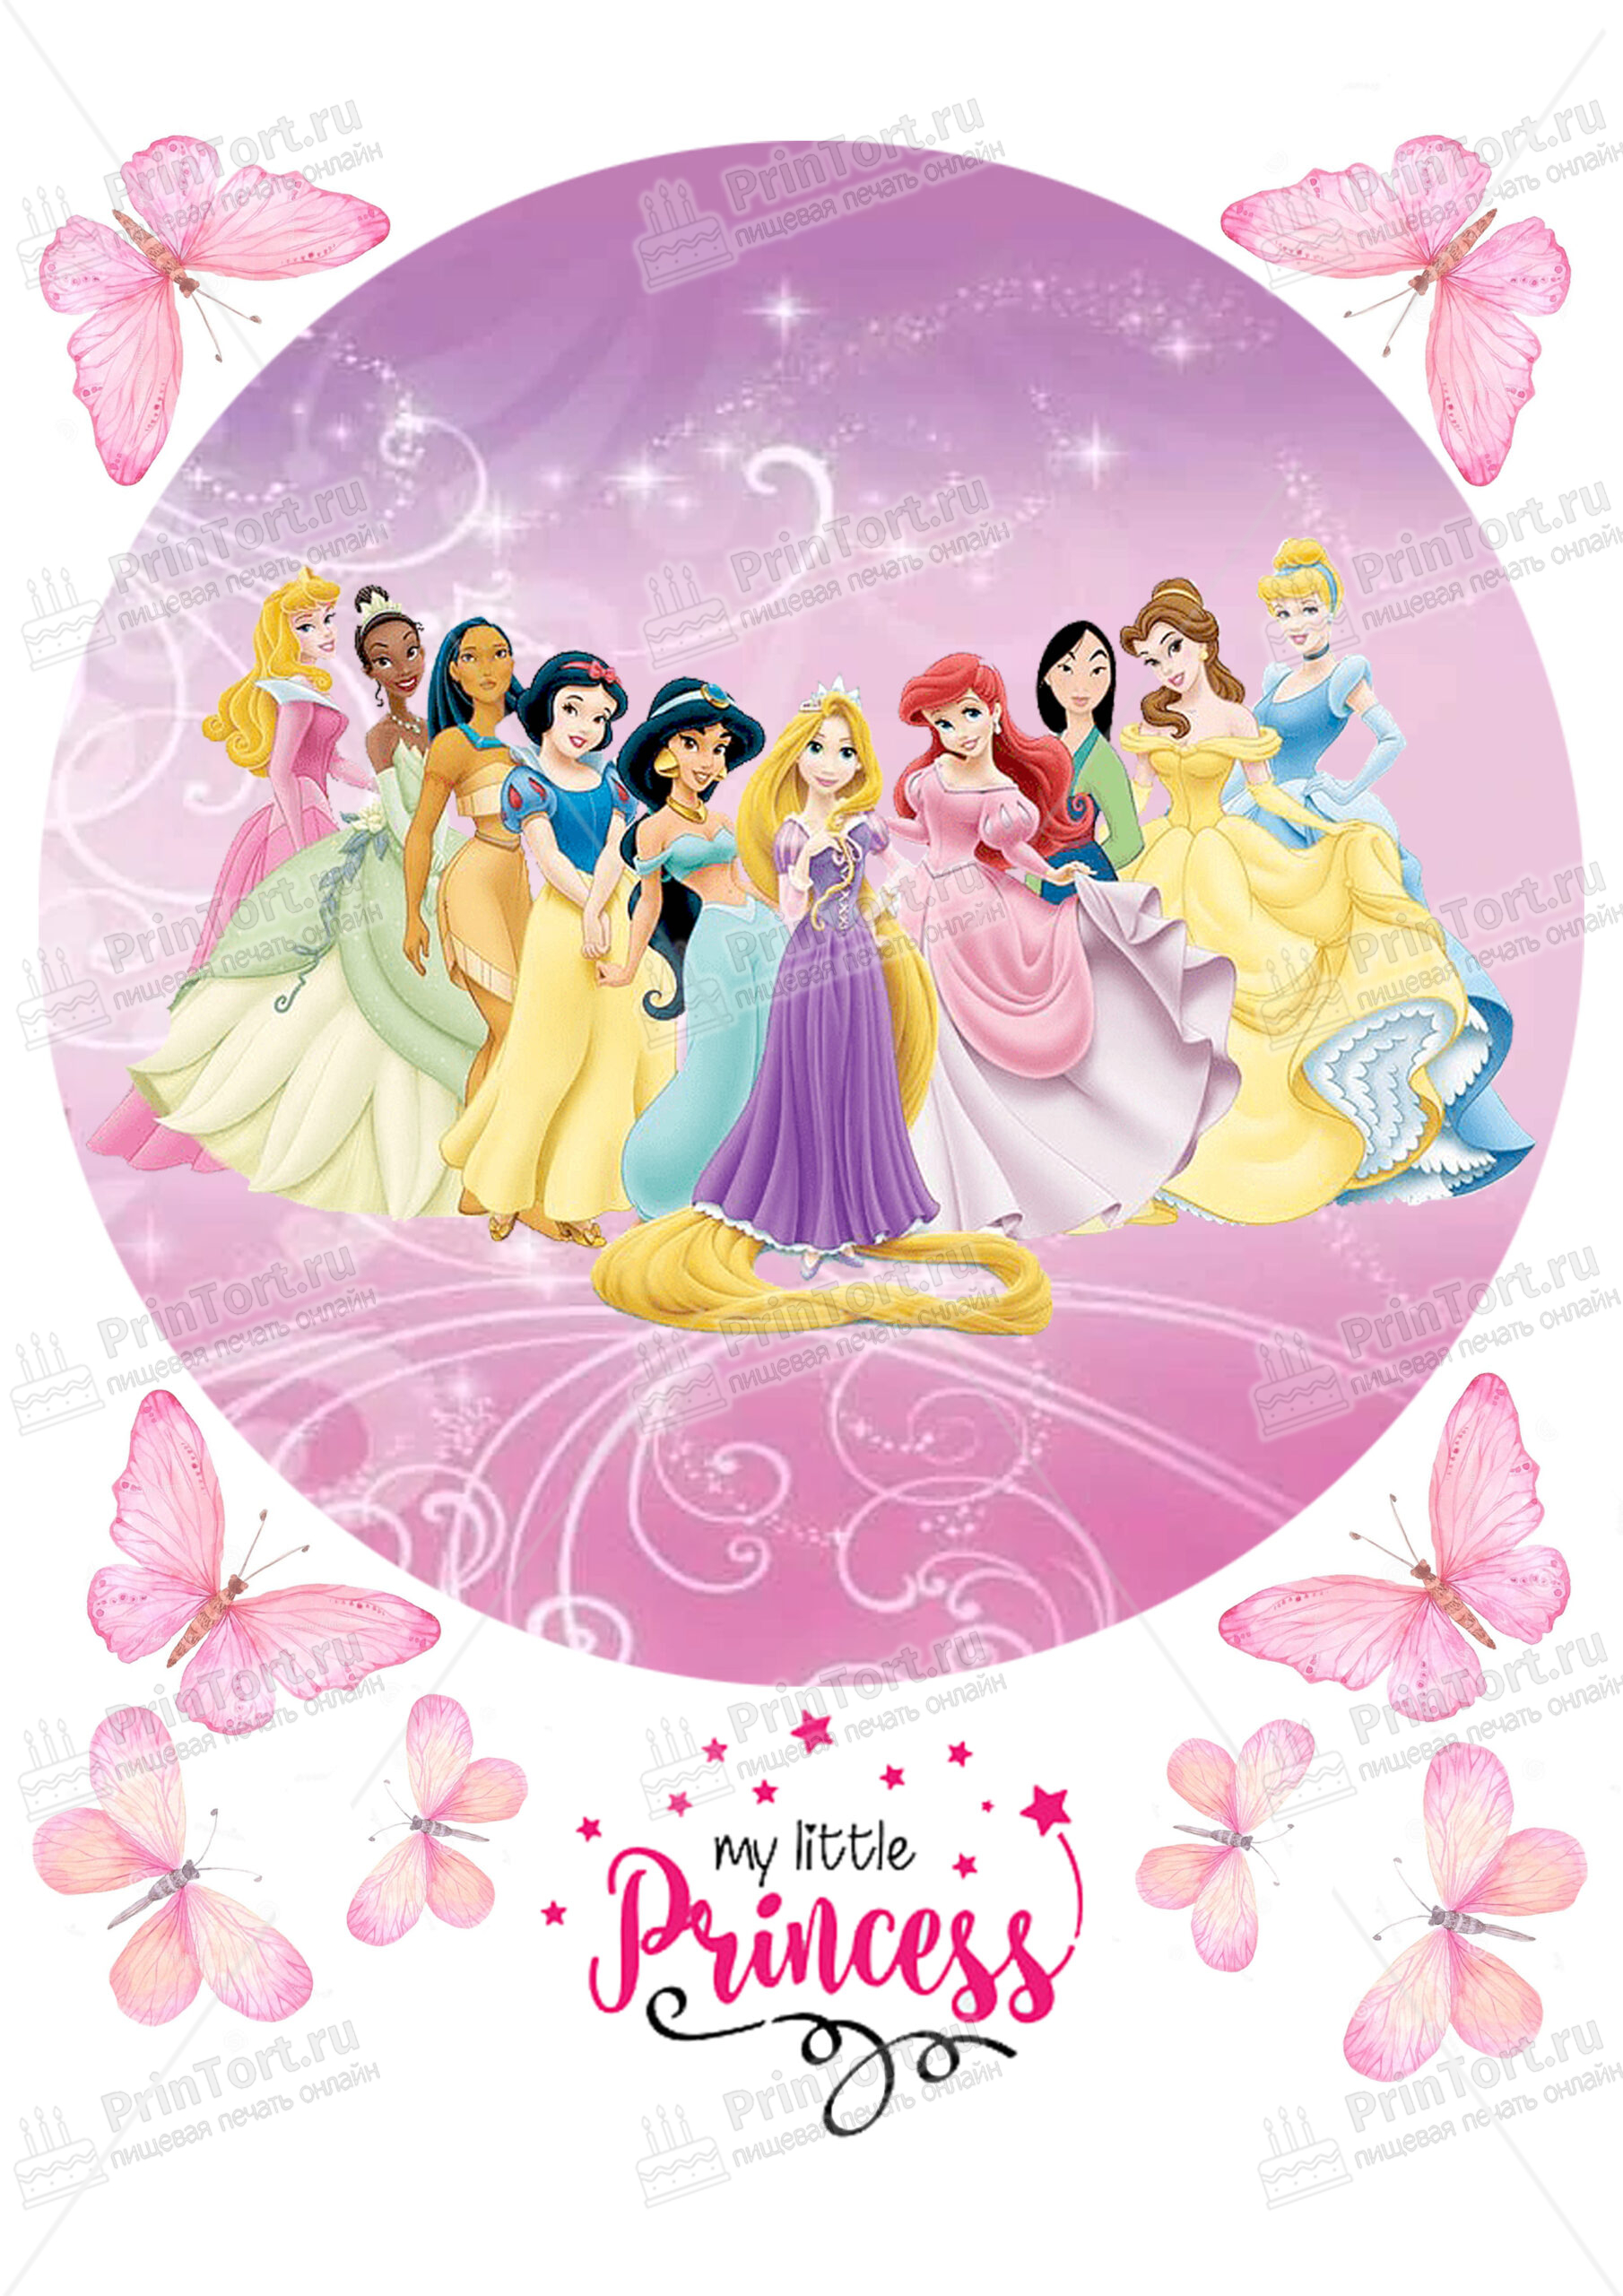 Картинка для торта Принцессы Дисней (Walt Disney)  - PT100542 печать на  сахарной пищевой бумаге